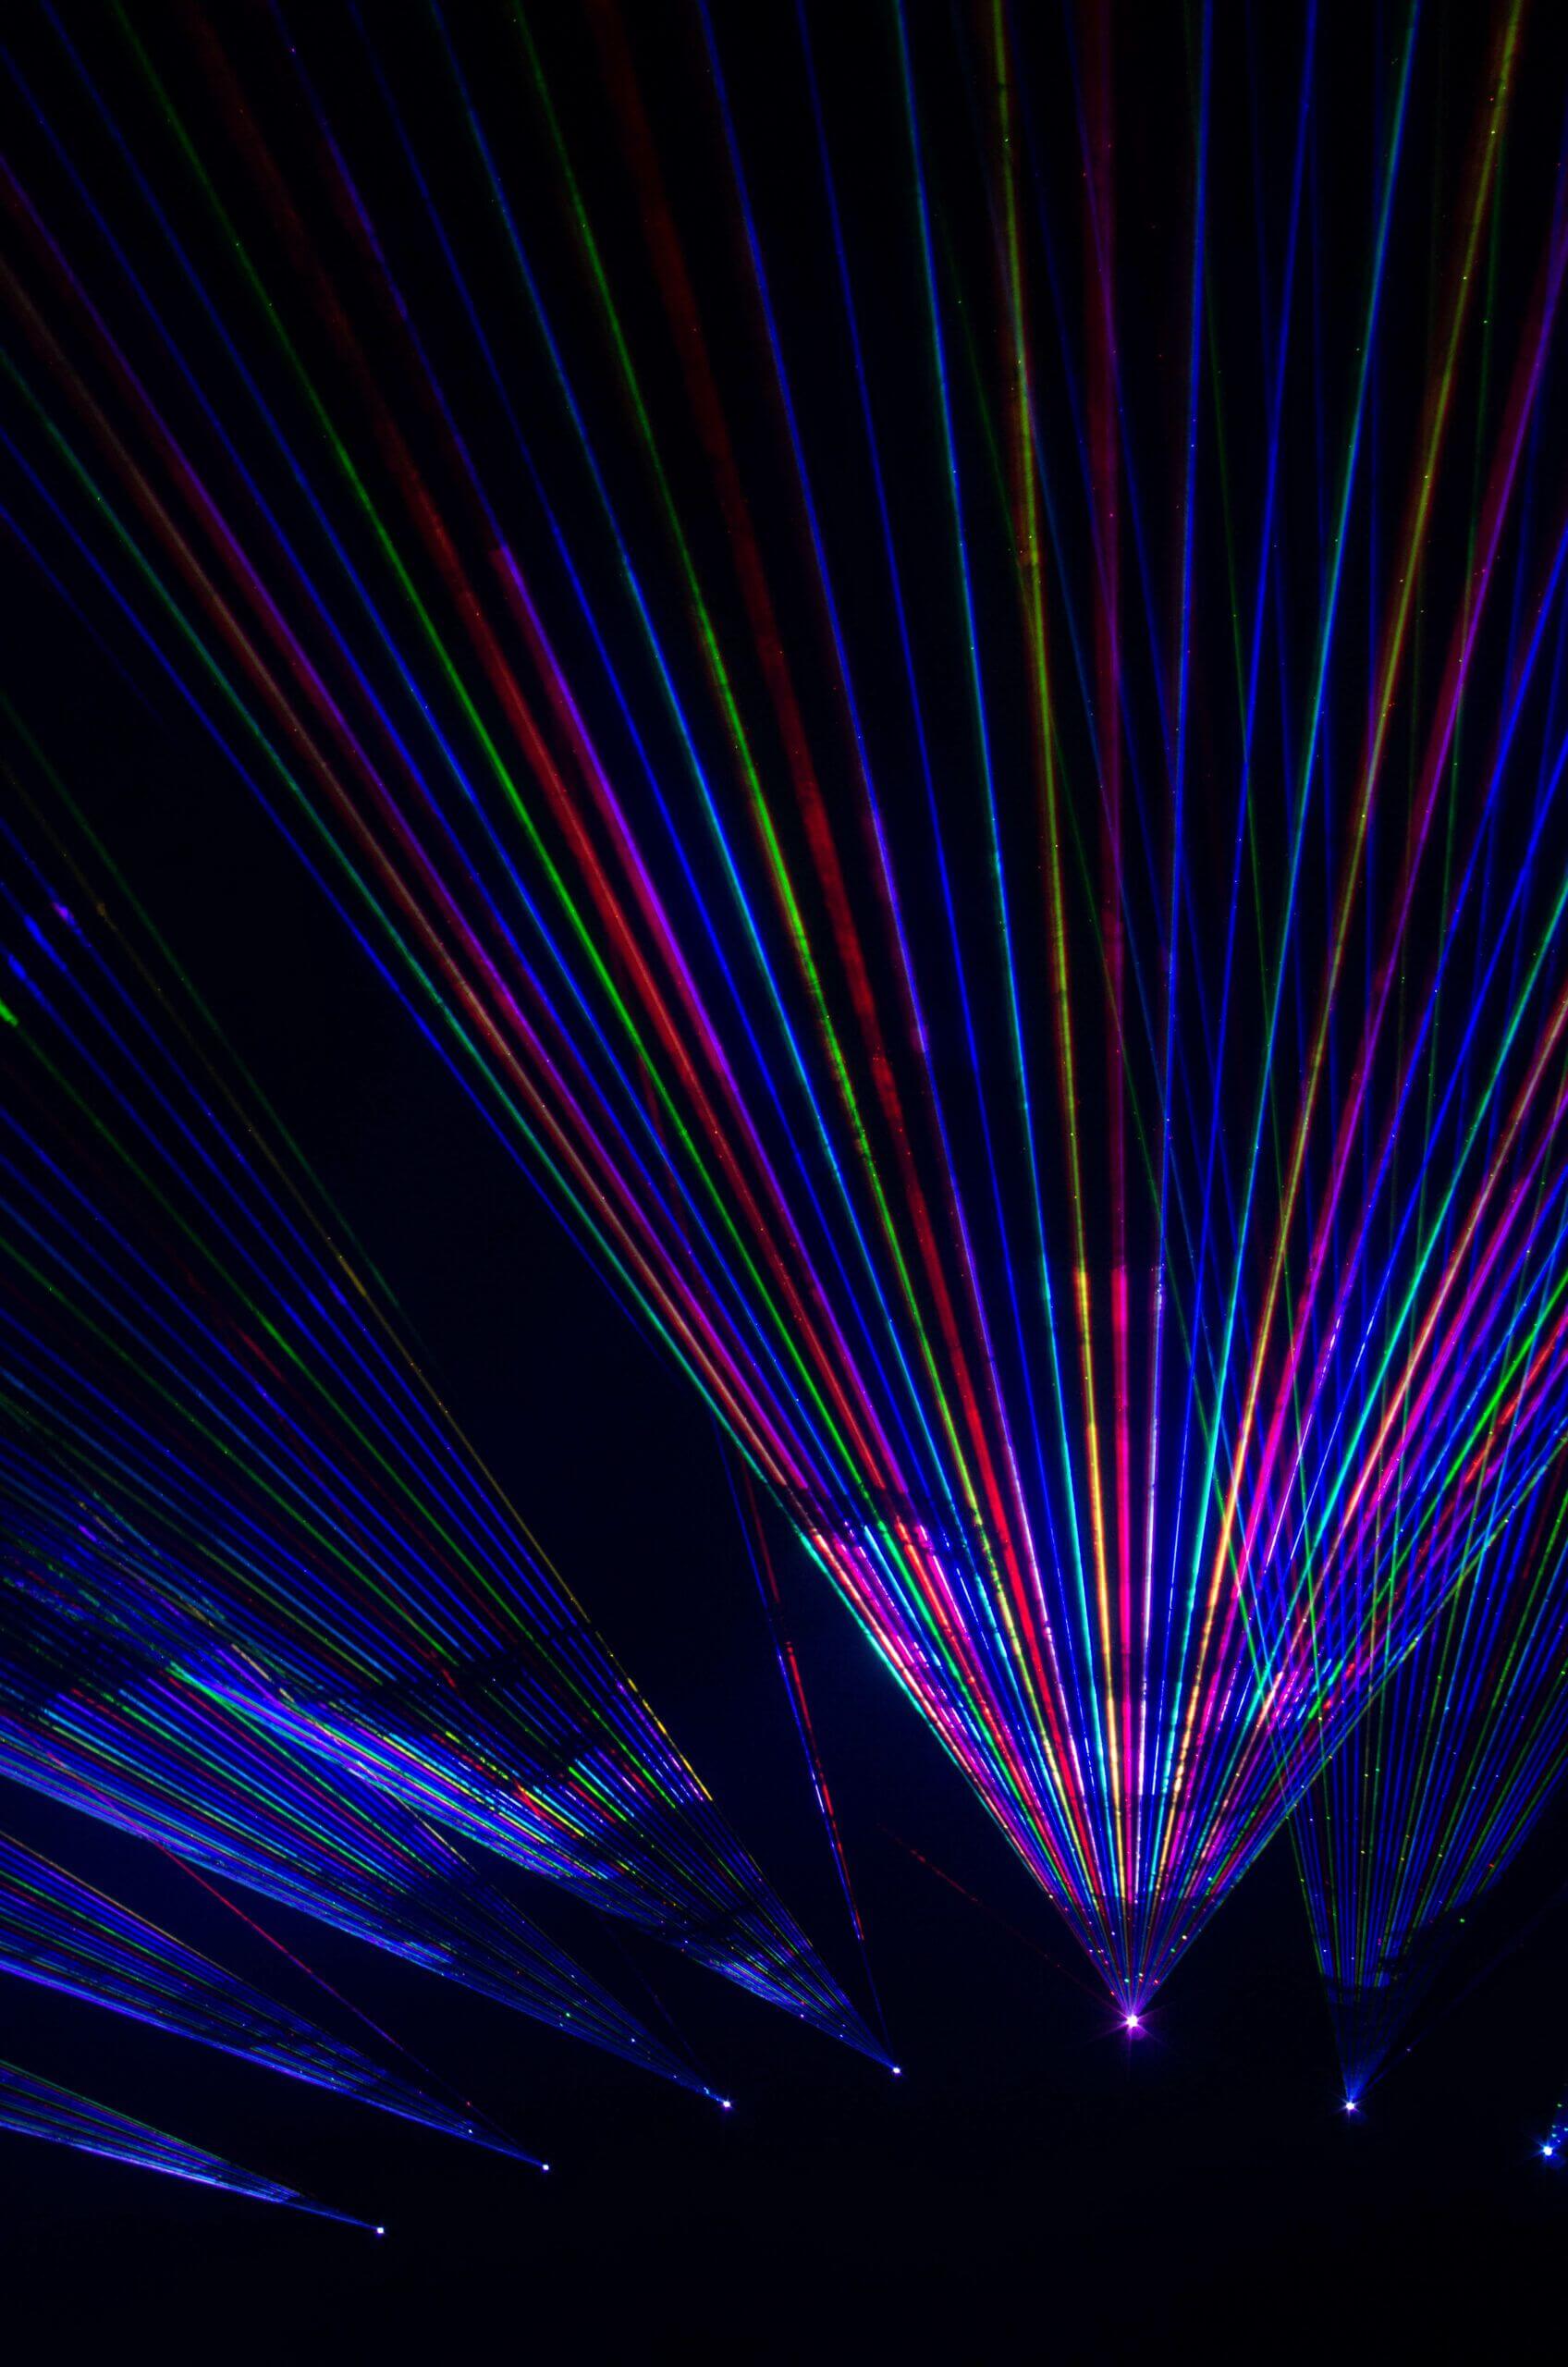 Europe Évènement - Spectre multicolore généré par les lasers